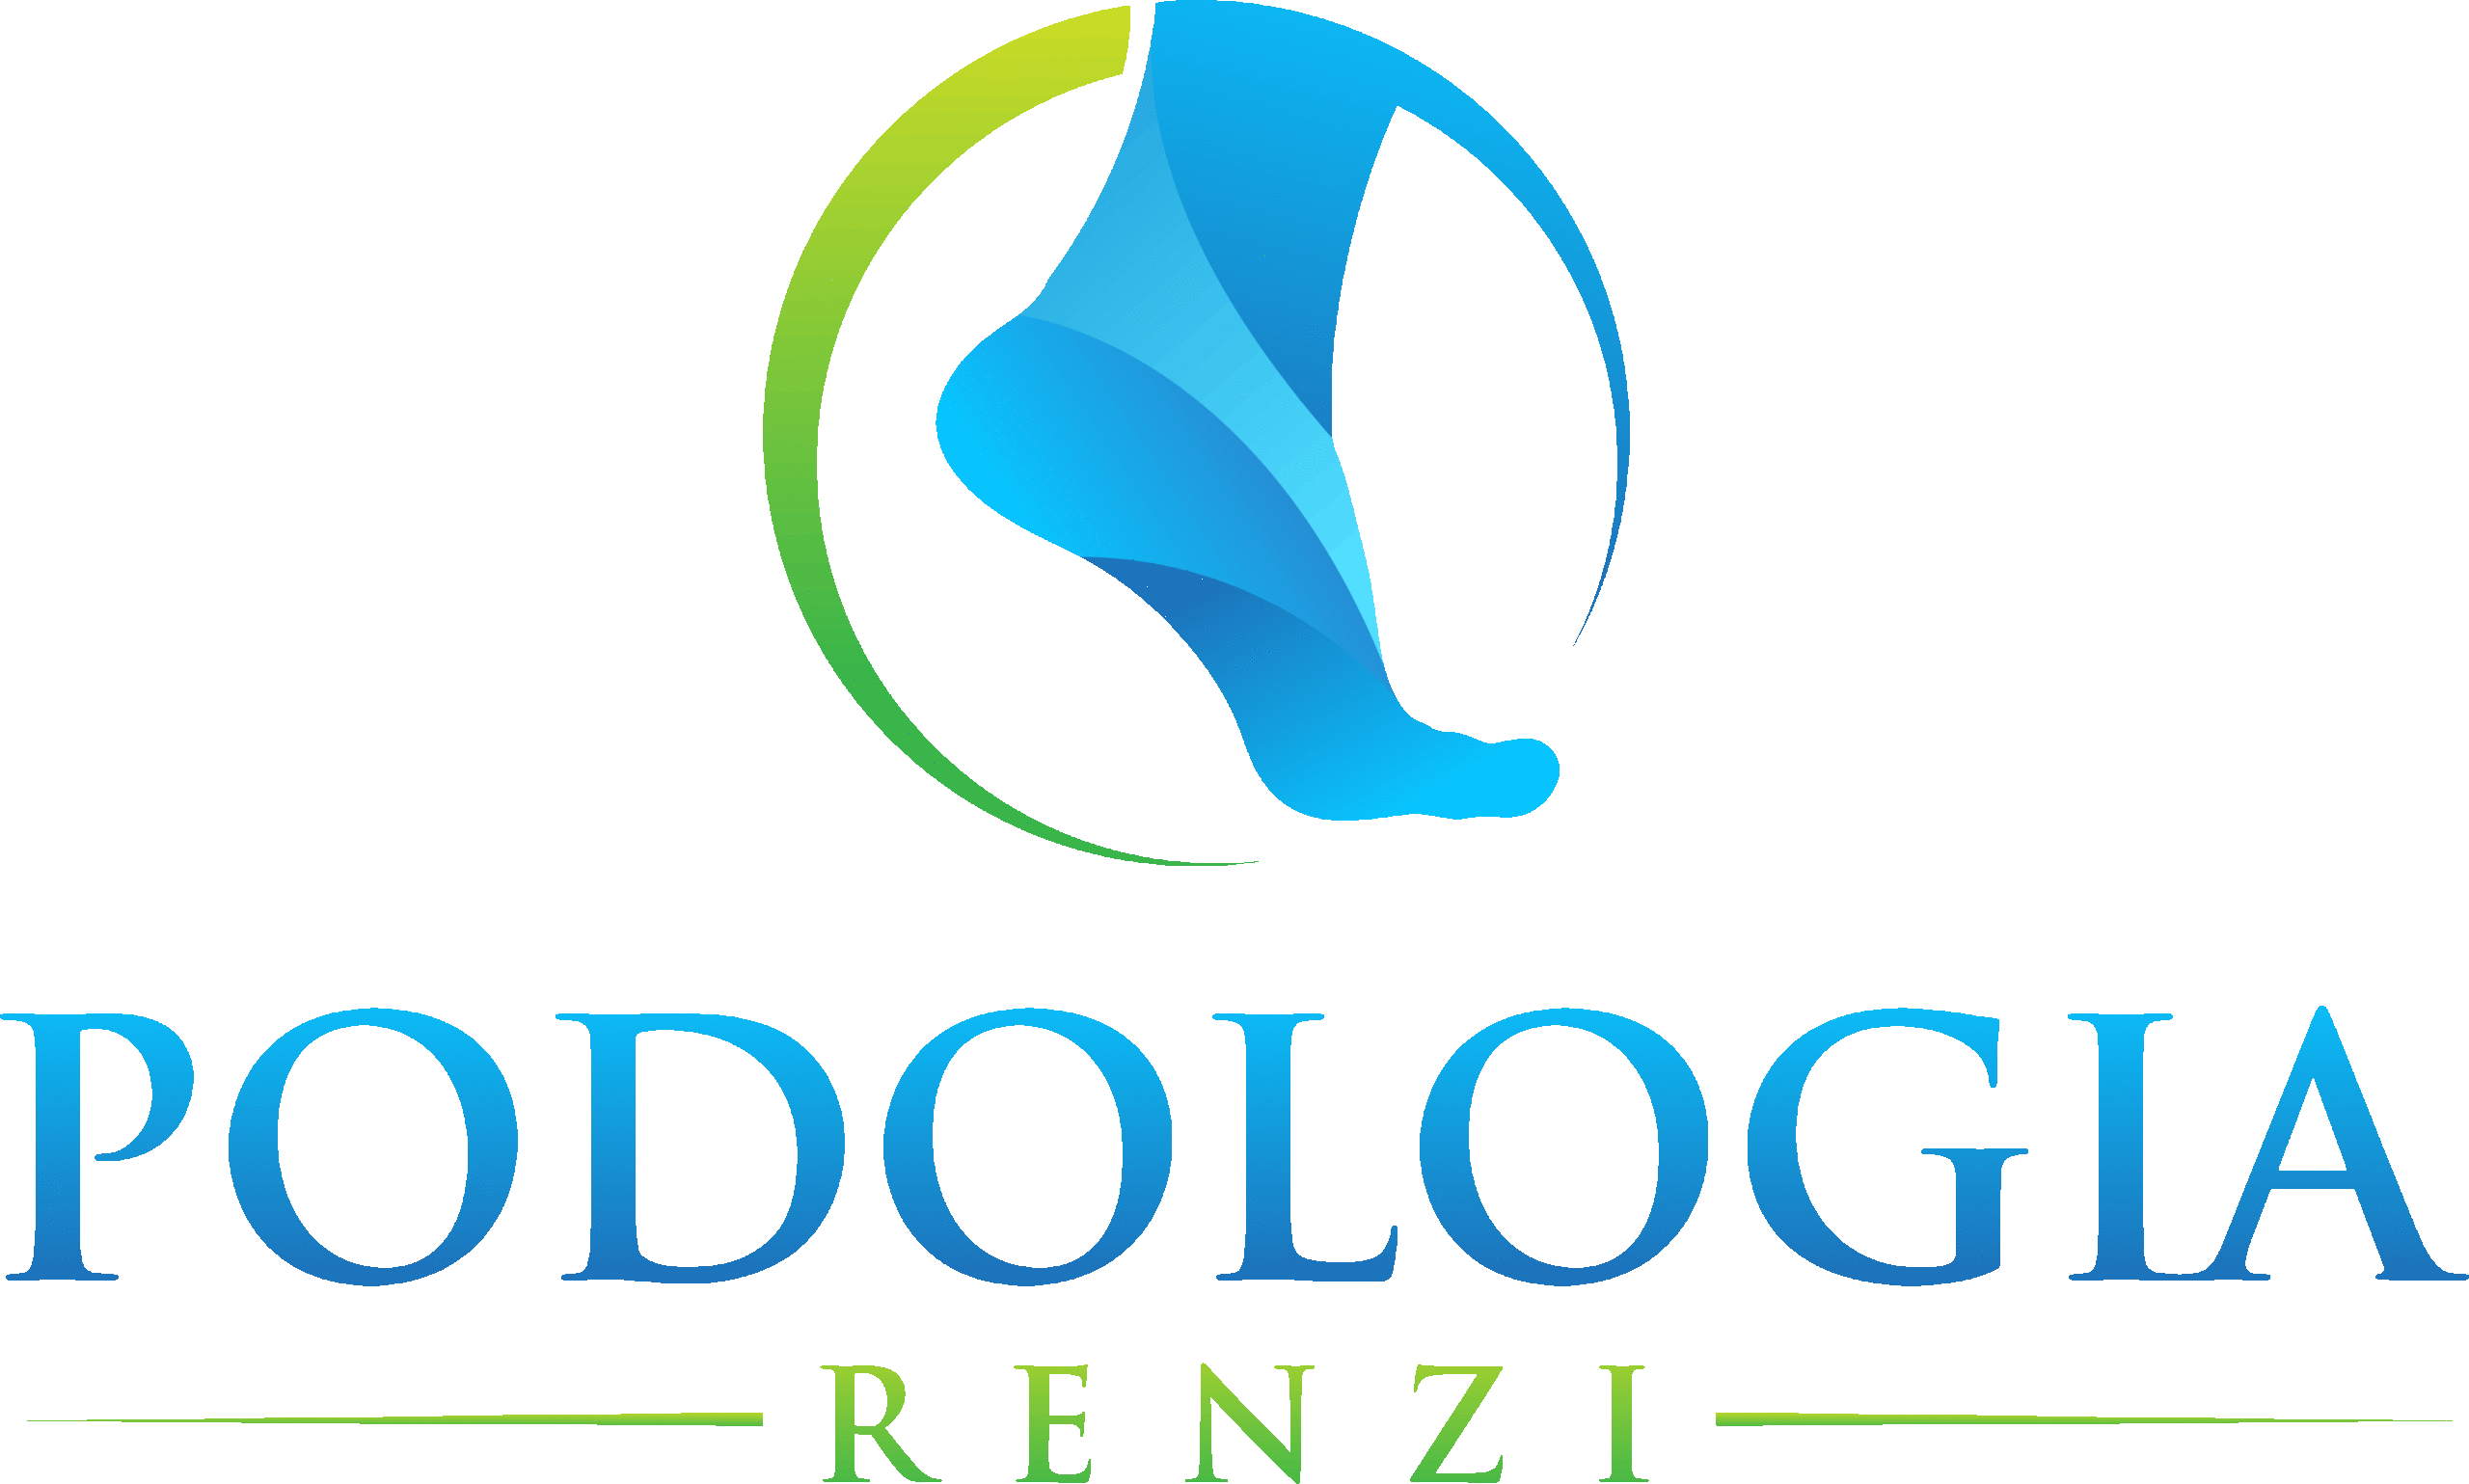 Podologia Renzi